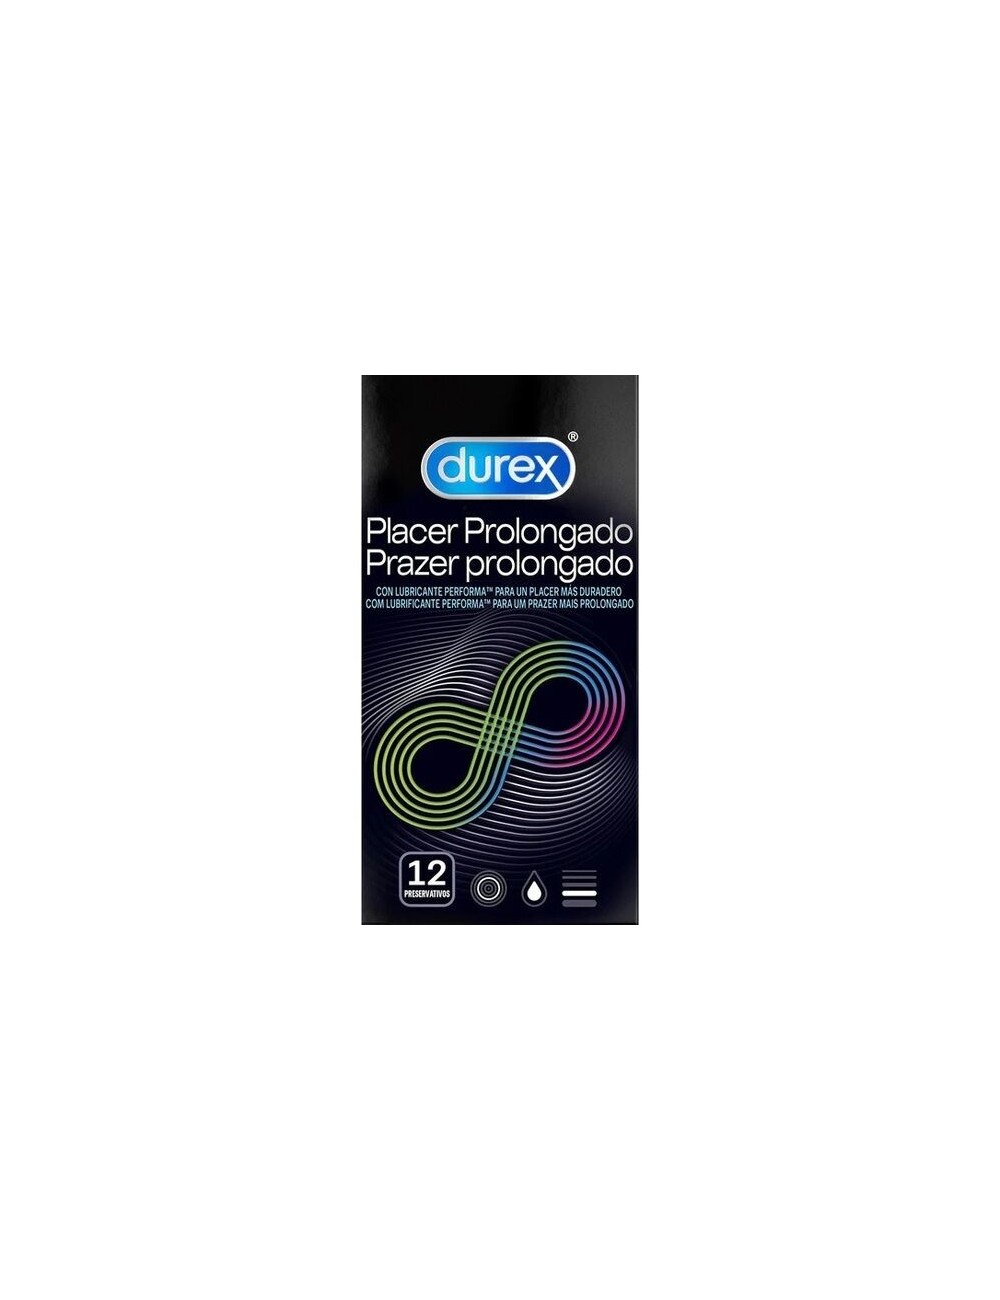 DUREX PLEASURE PROLONGED RETARDANT 12 UNITE - Aphrodisiaques - Durex Condoms